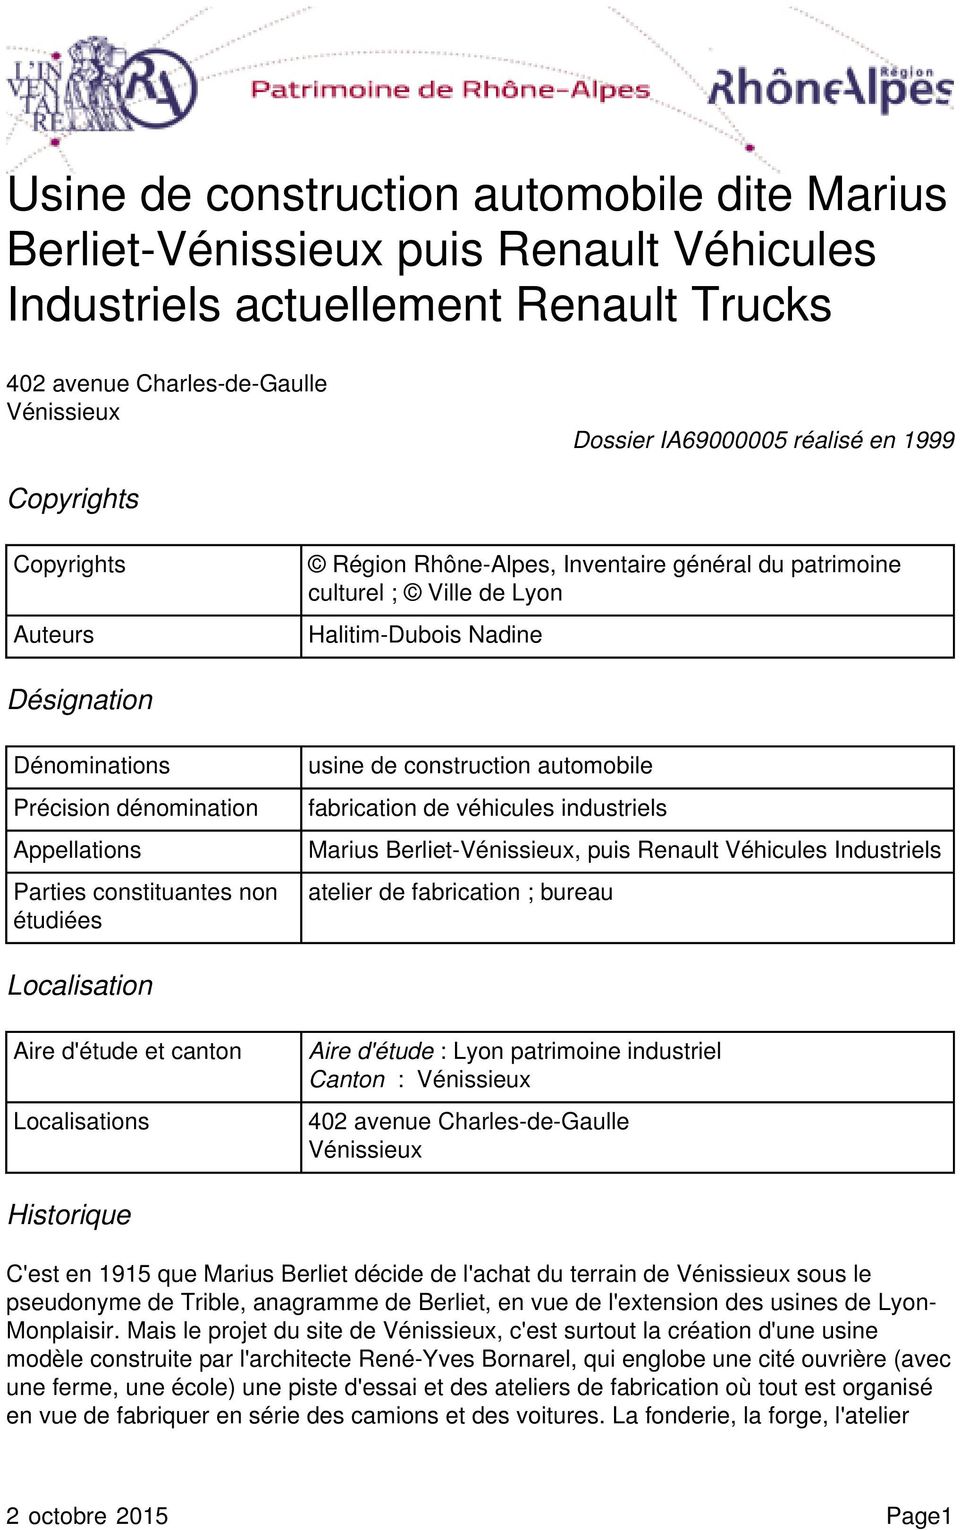 Précision dénomination fabrication de véhicules industriels Appellations Marius Berliet-Vénissieux, puis Renault Véhicules Industriels Parties constituantes non étudiées atelier de fabrication ;